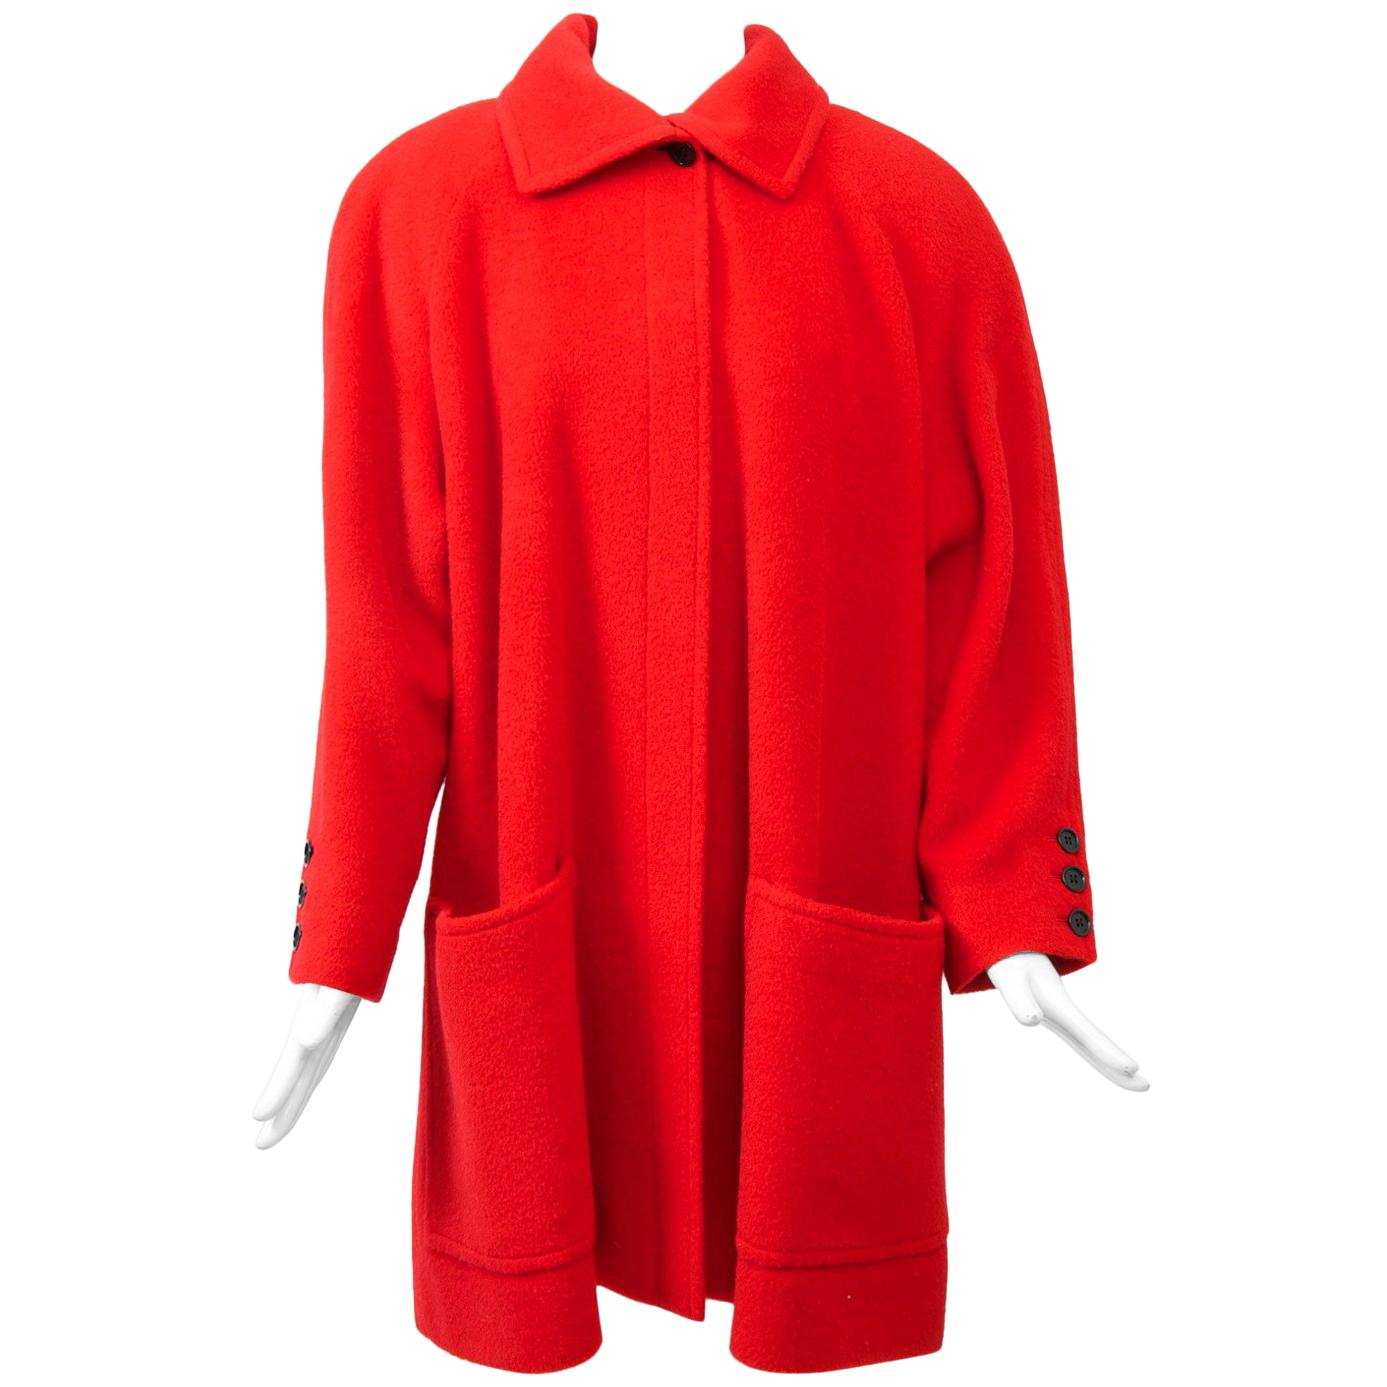 Tiktiner Short Red Coat